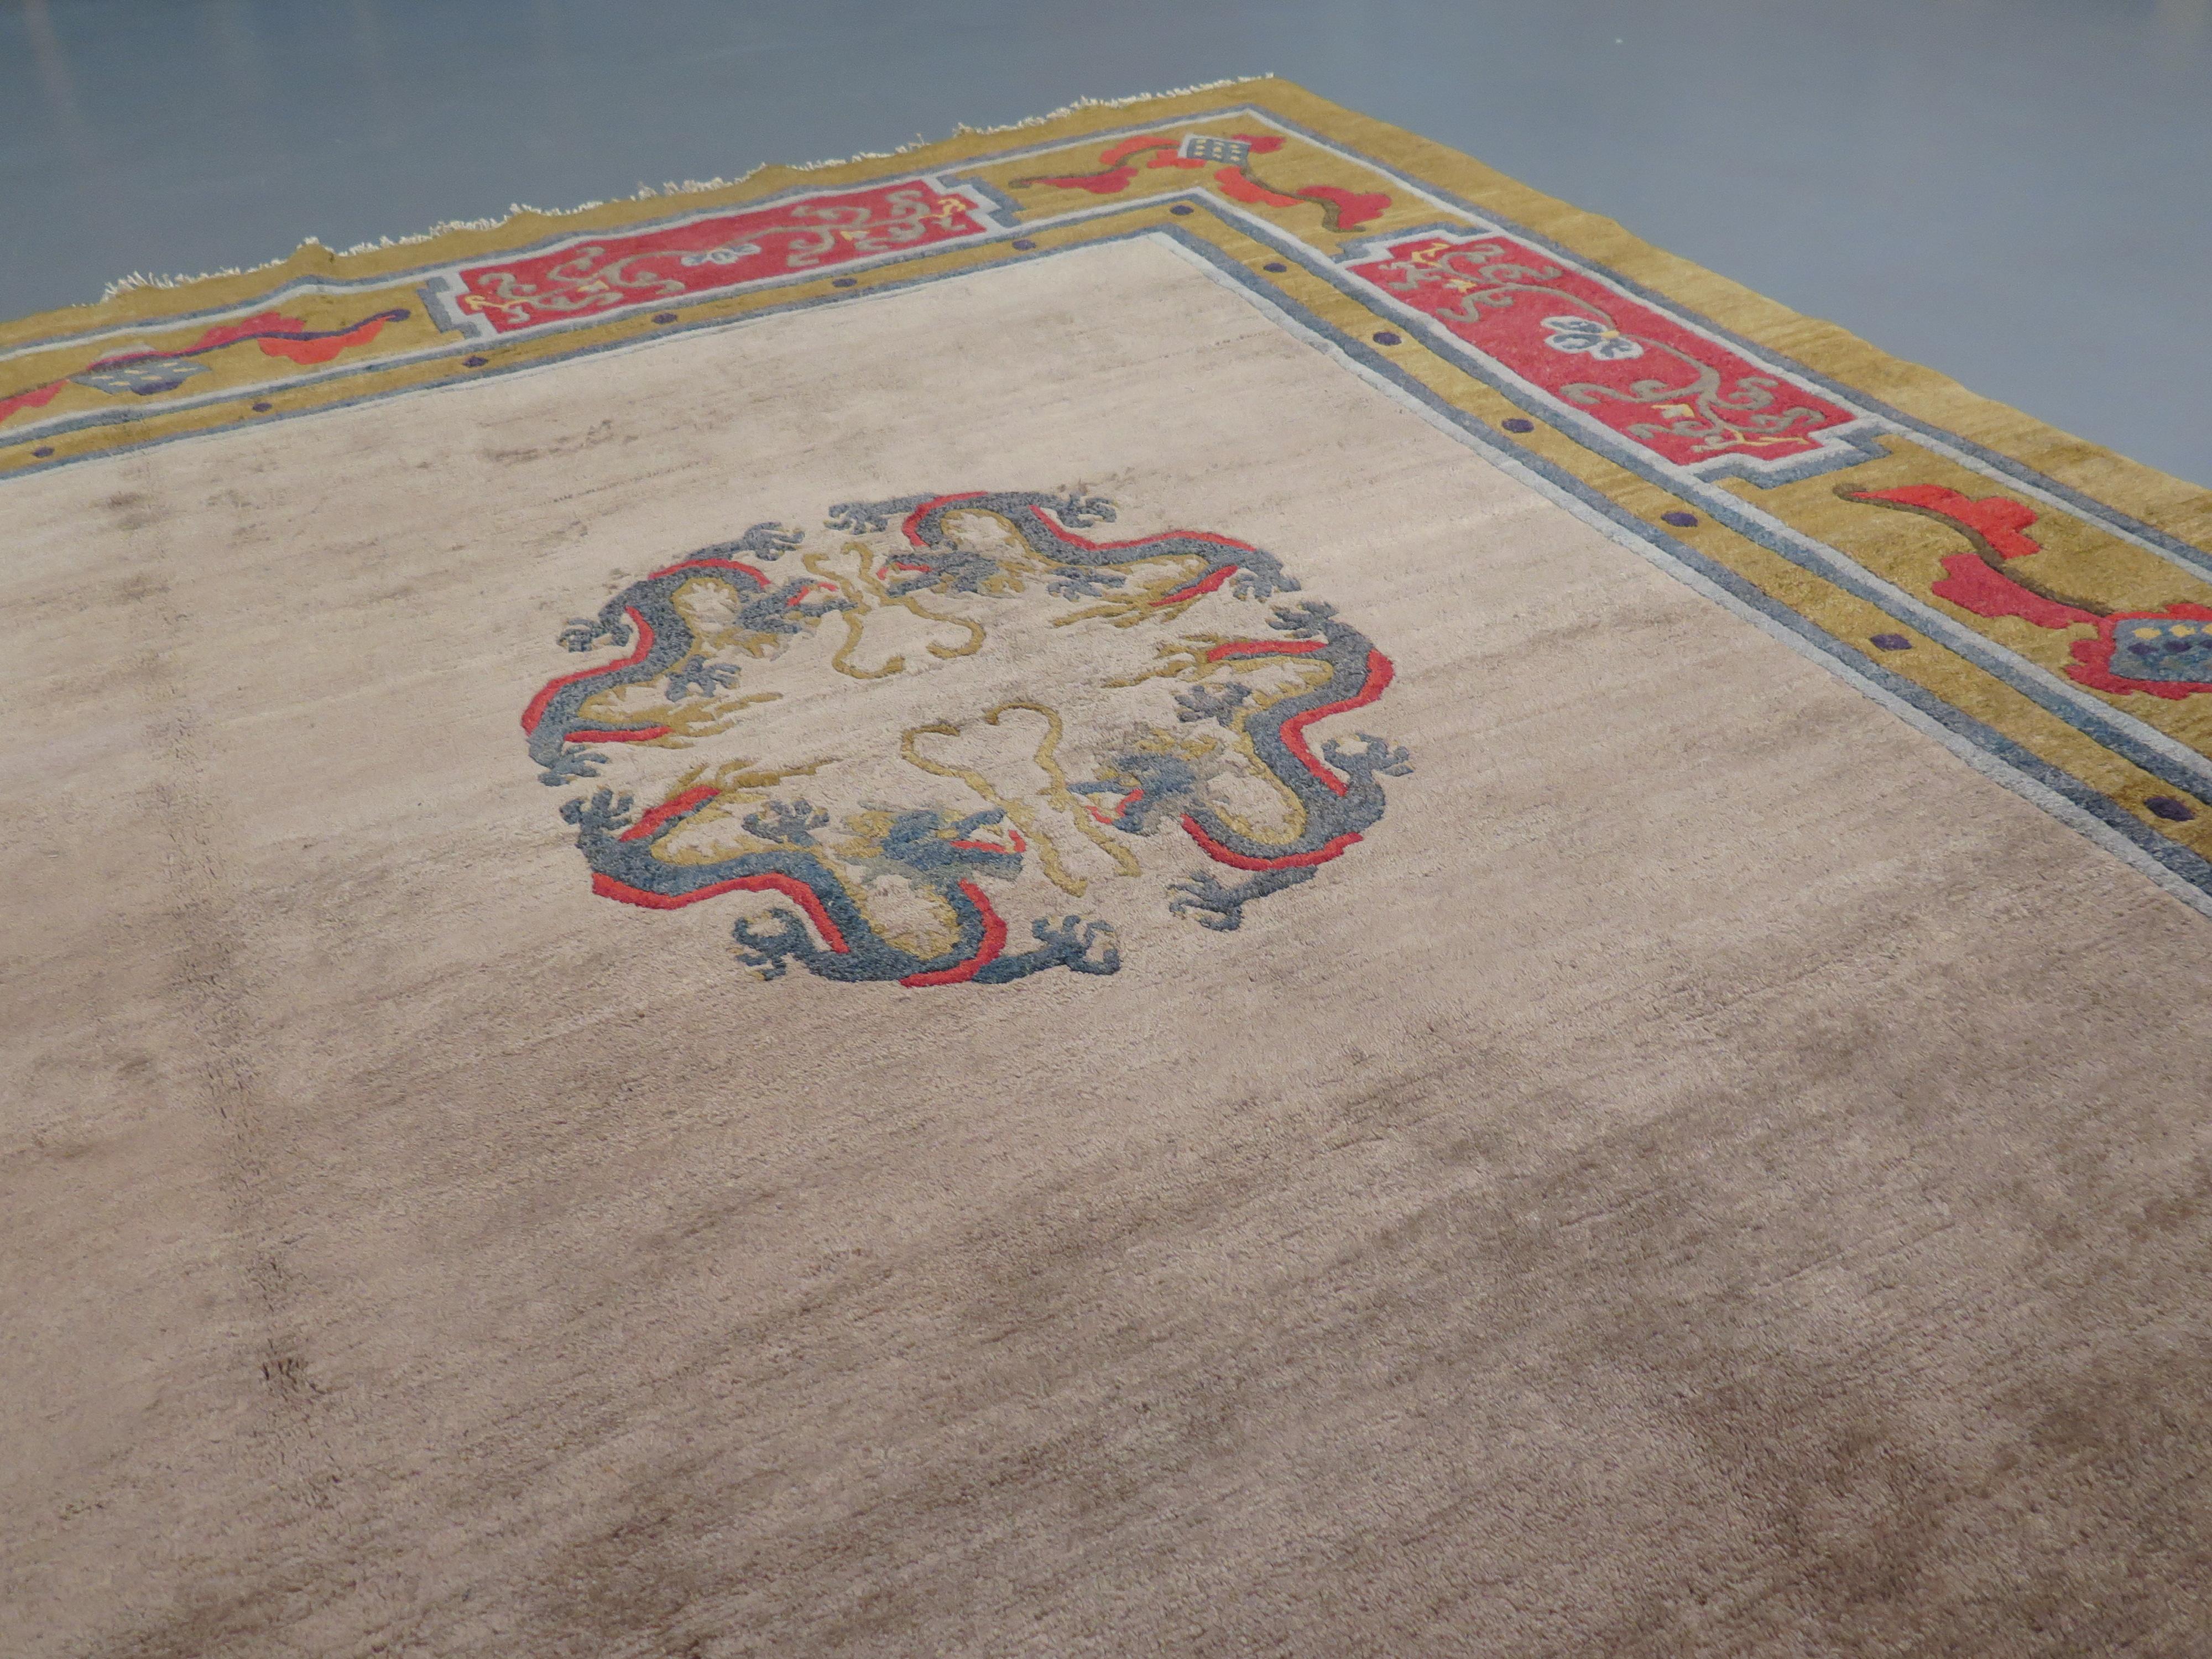 Obwohl nur sehr wenige antike Exemplare erhalten sind, reicht die Tradition der mongolischen Teppichweberei viele Jahrhunderte zurück. Sie wurde teilweise von den Designs chinesischer Textilien inspiriert und übernahm bestimmte charakteristische